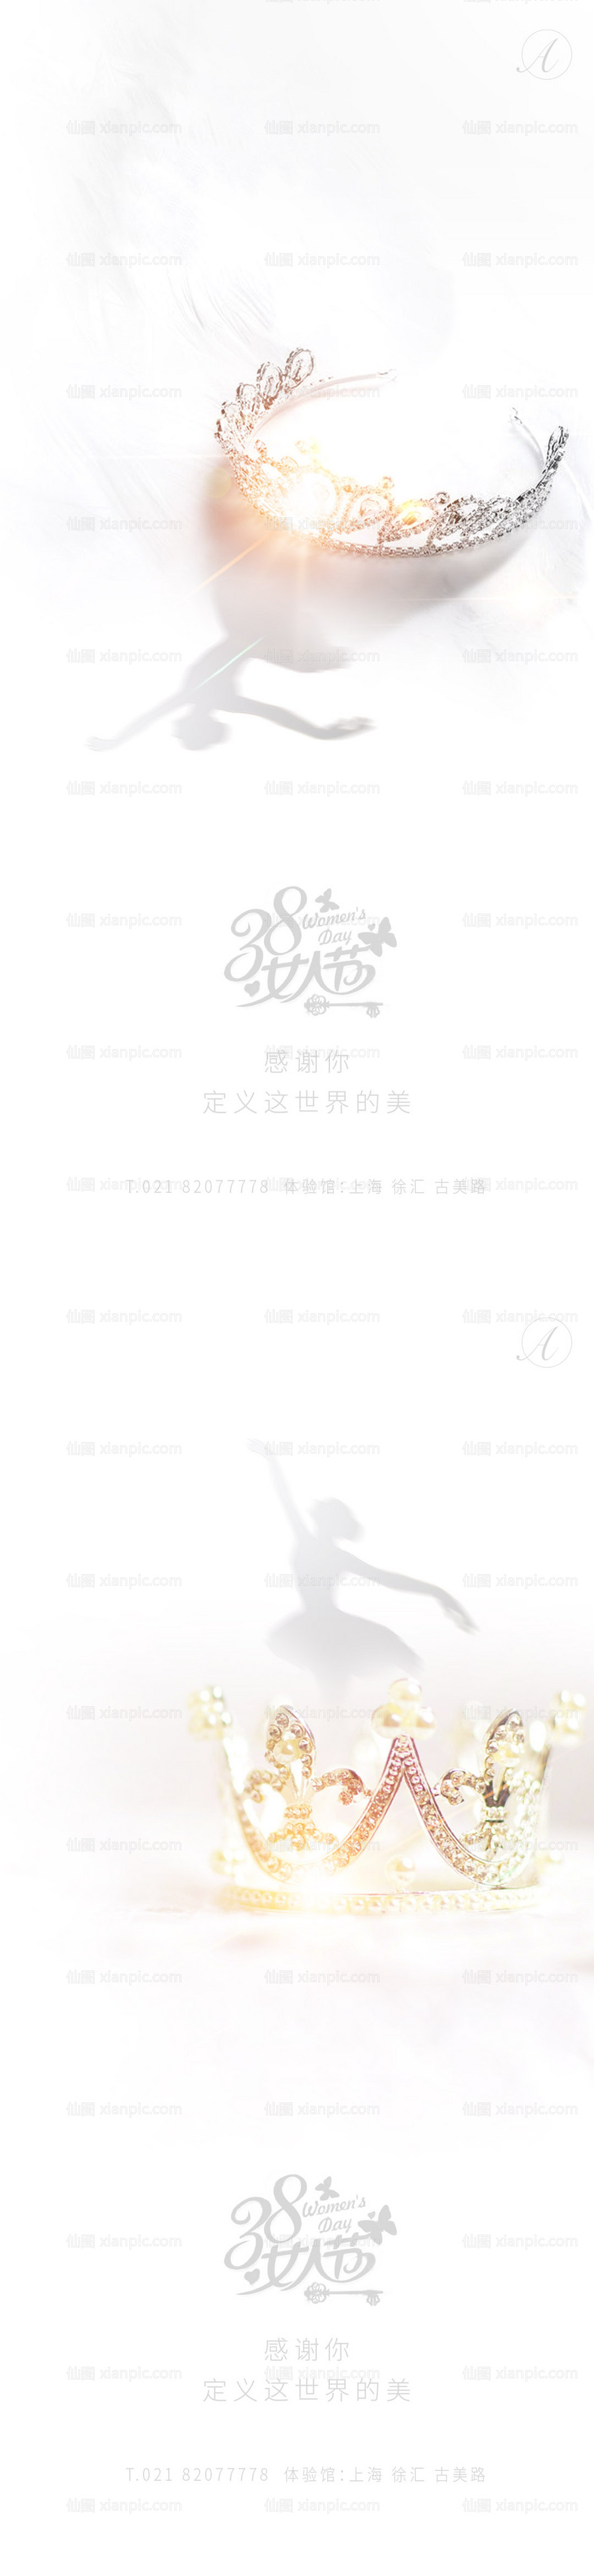 素材乐-38女神节节日系列海报